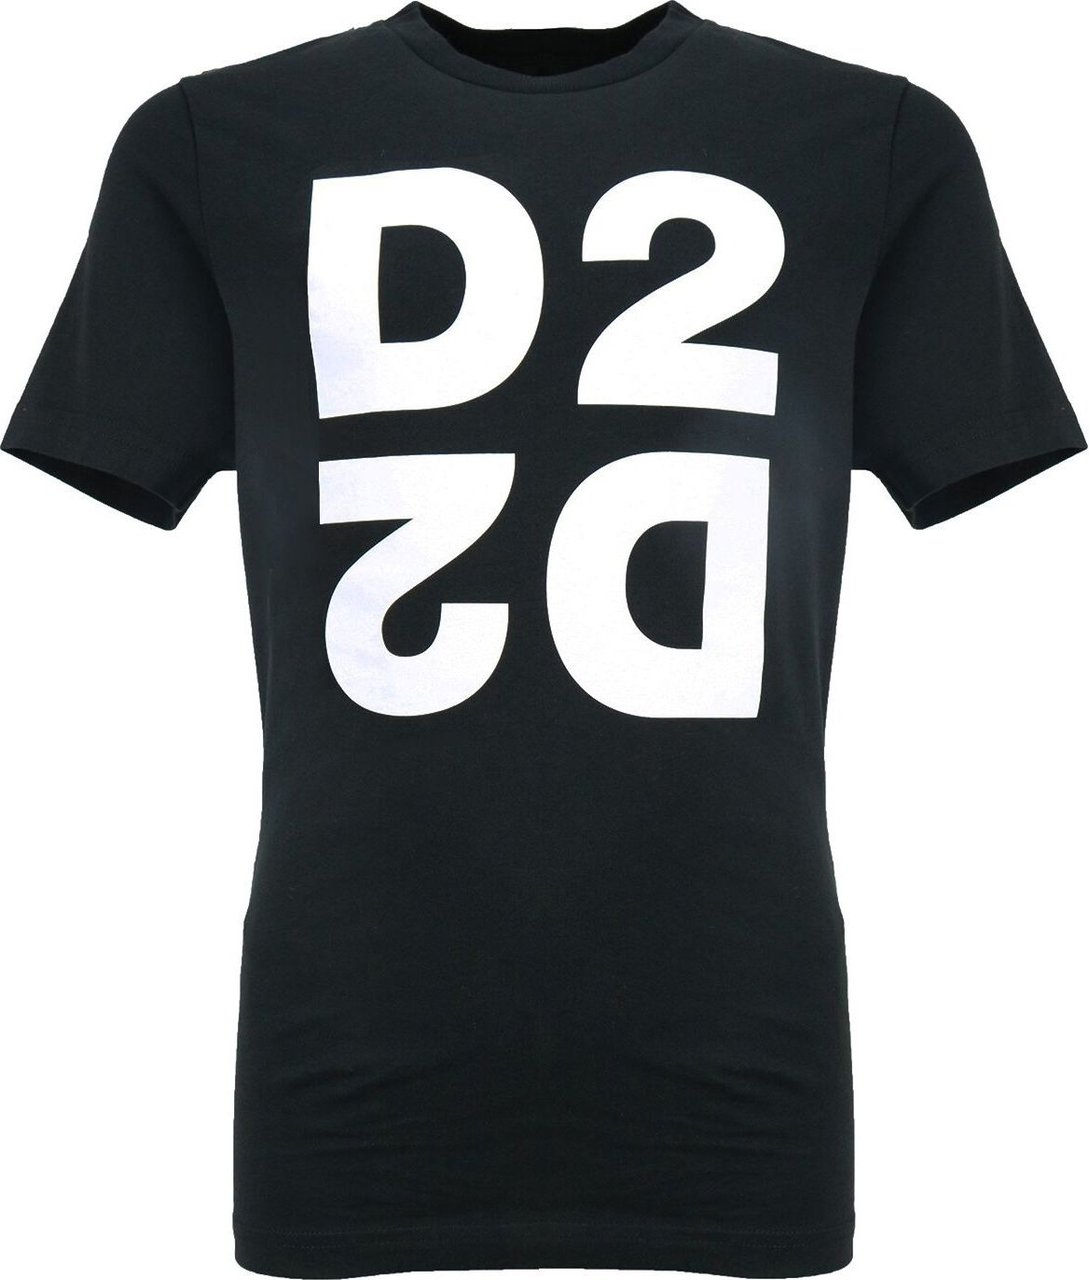 Dsquared2 Shirt Zwart D2-2D Zwart